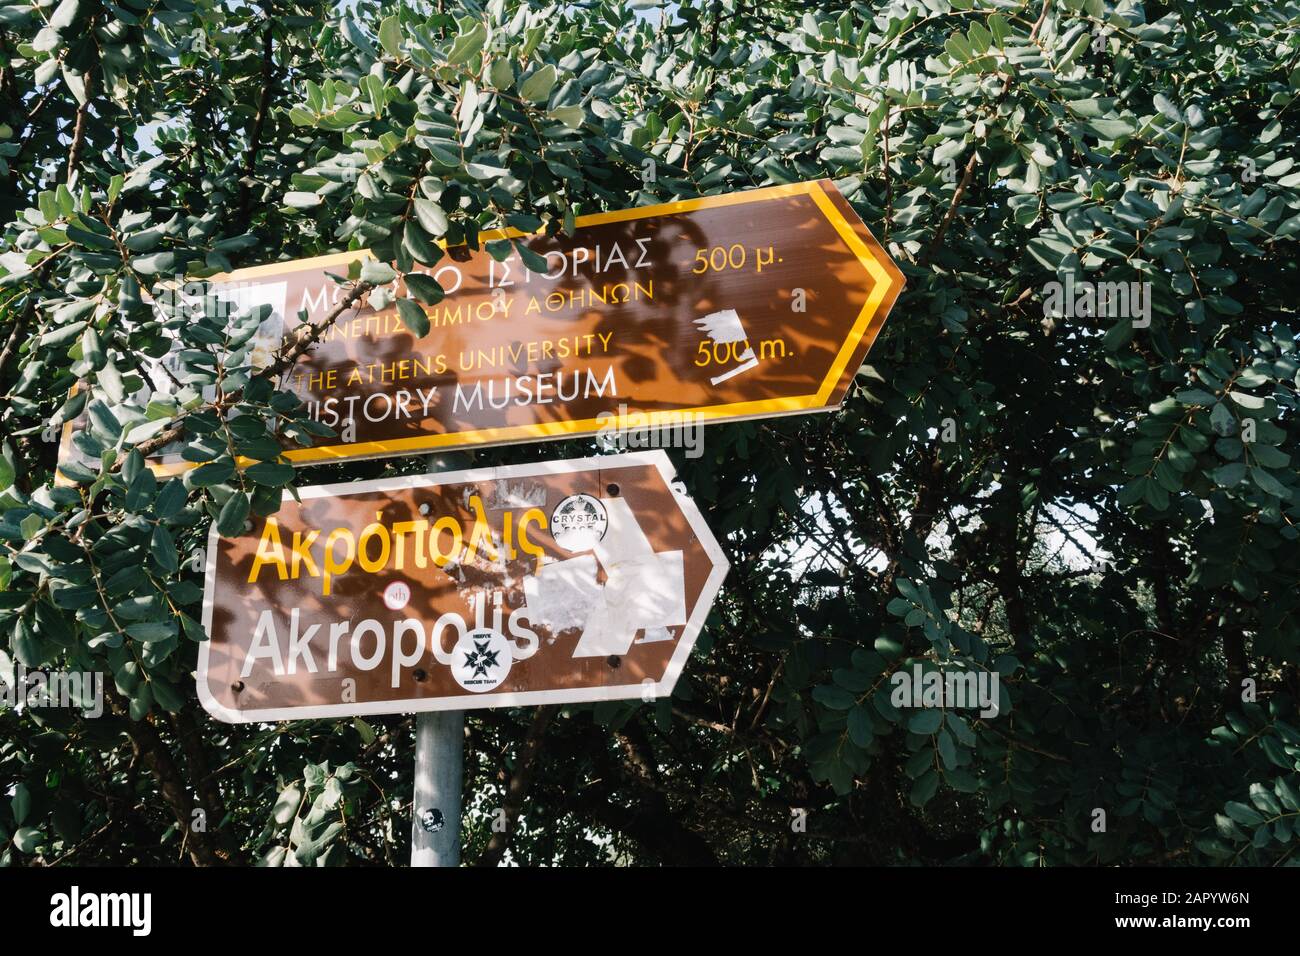 Athen, Griechenland - 21. Dezember 2019: Schild des Akropolis-Museums unterhalb der Akropolis in Athen Griechenland Stockfoto